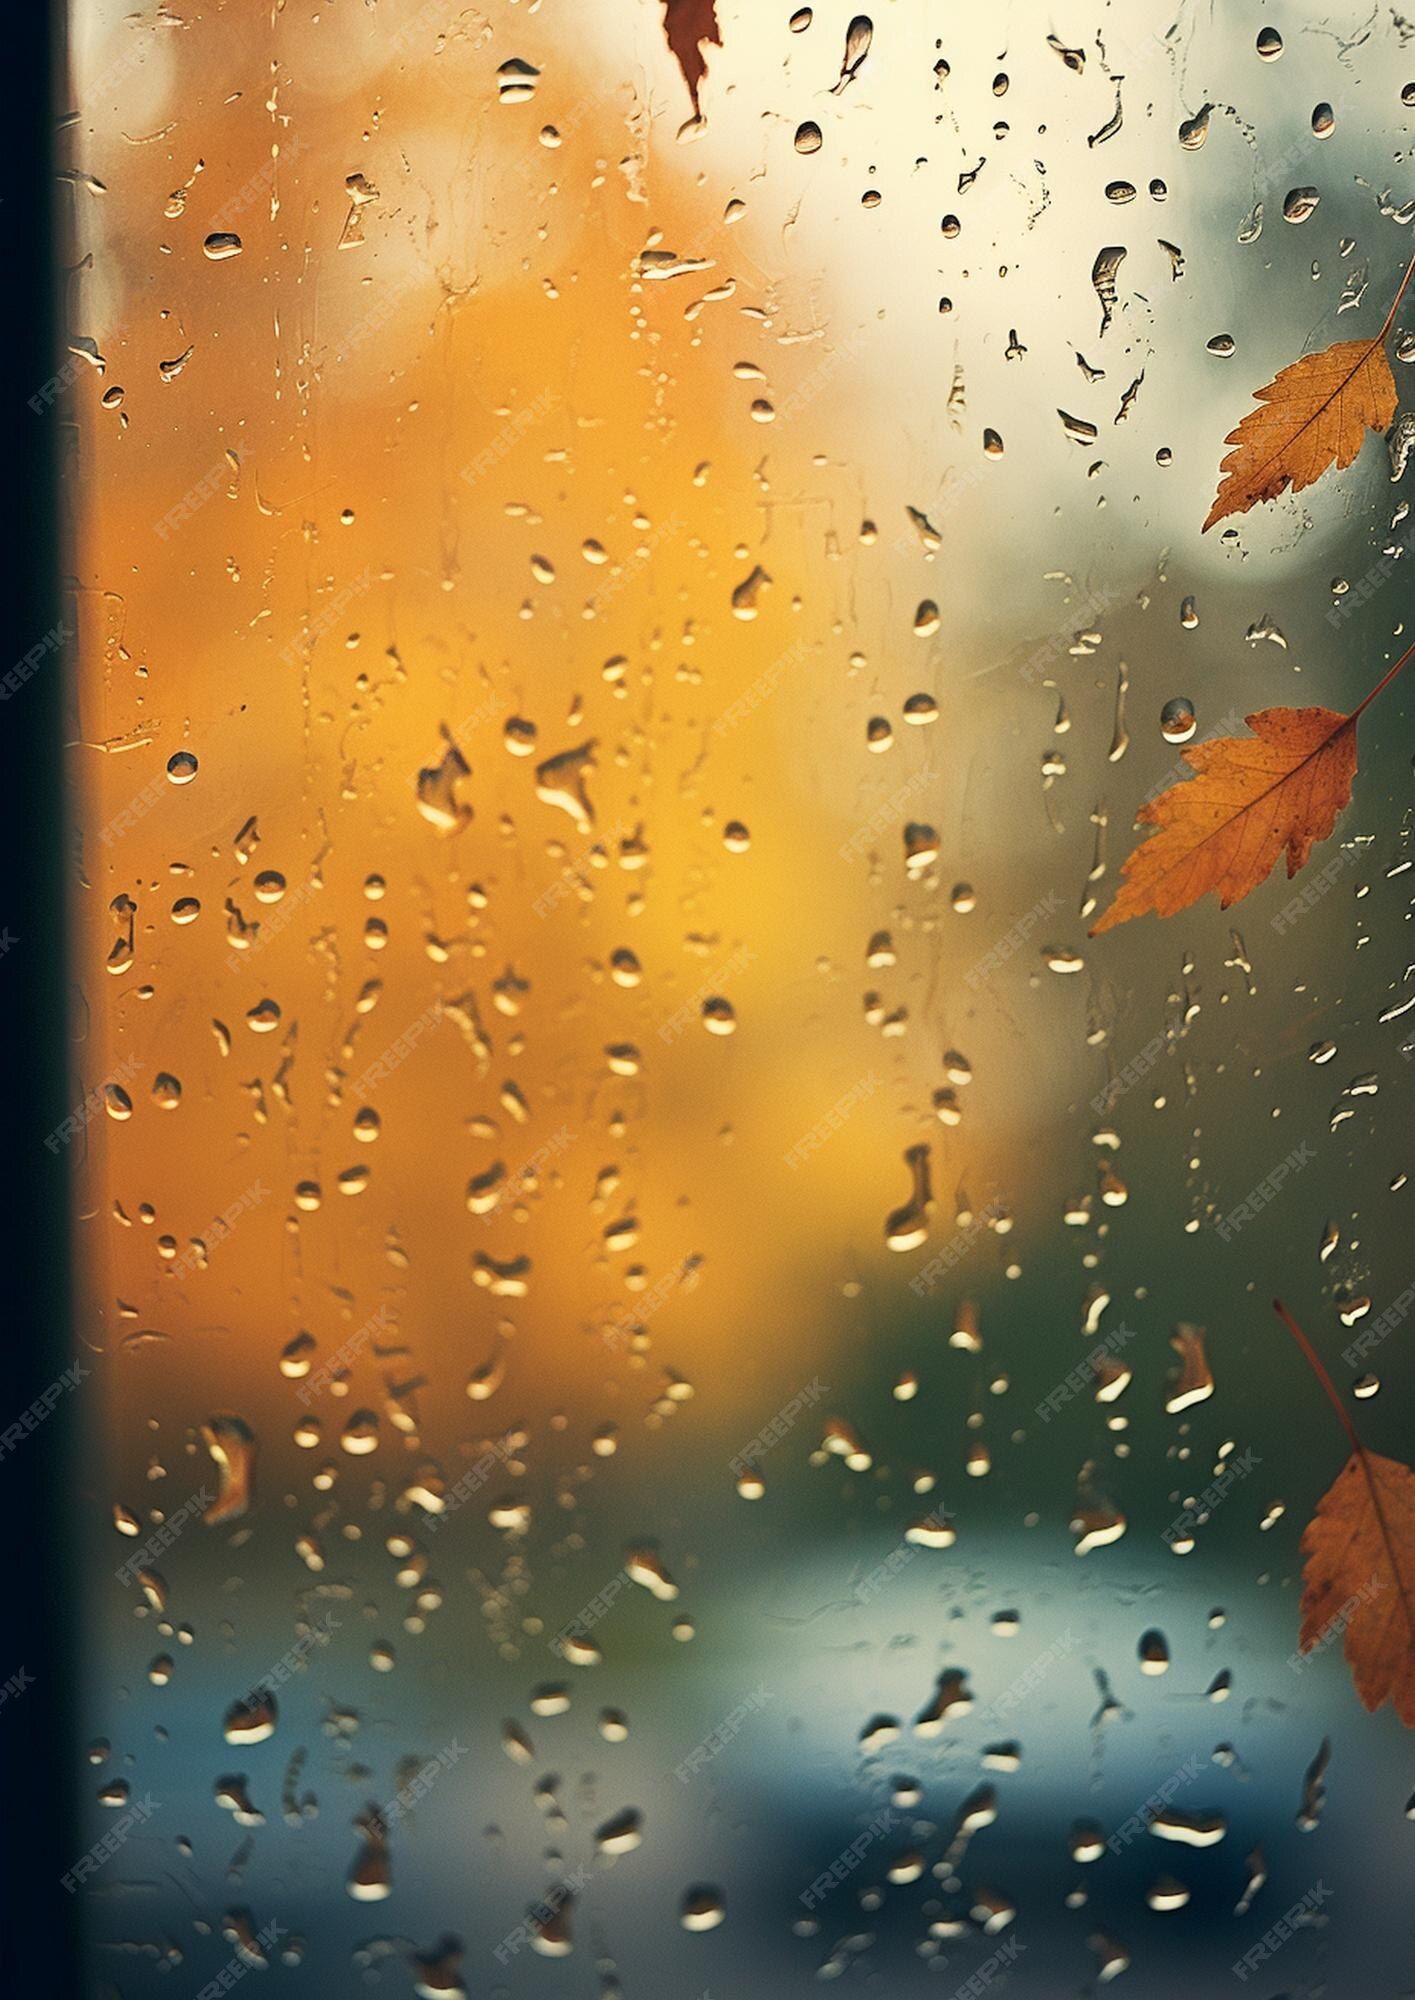  Regen Hintergrundbild 1415x2000. Fenster nass von regen und regentropfen, eine leere landschaft dahinter herbstsonne